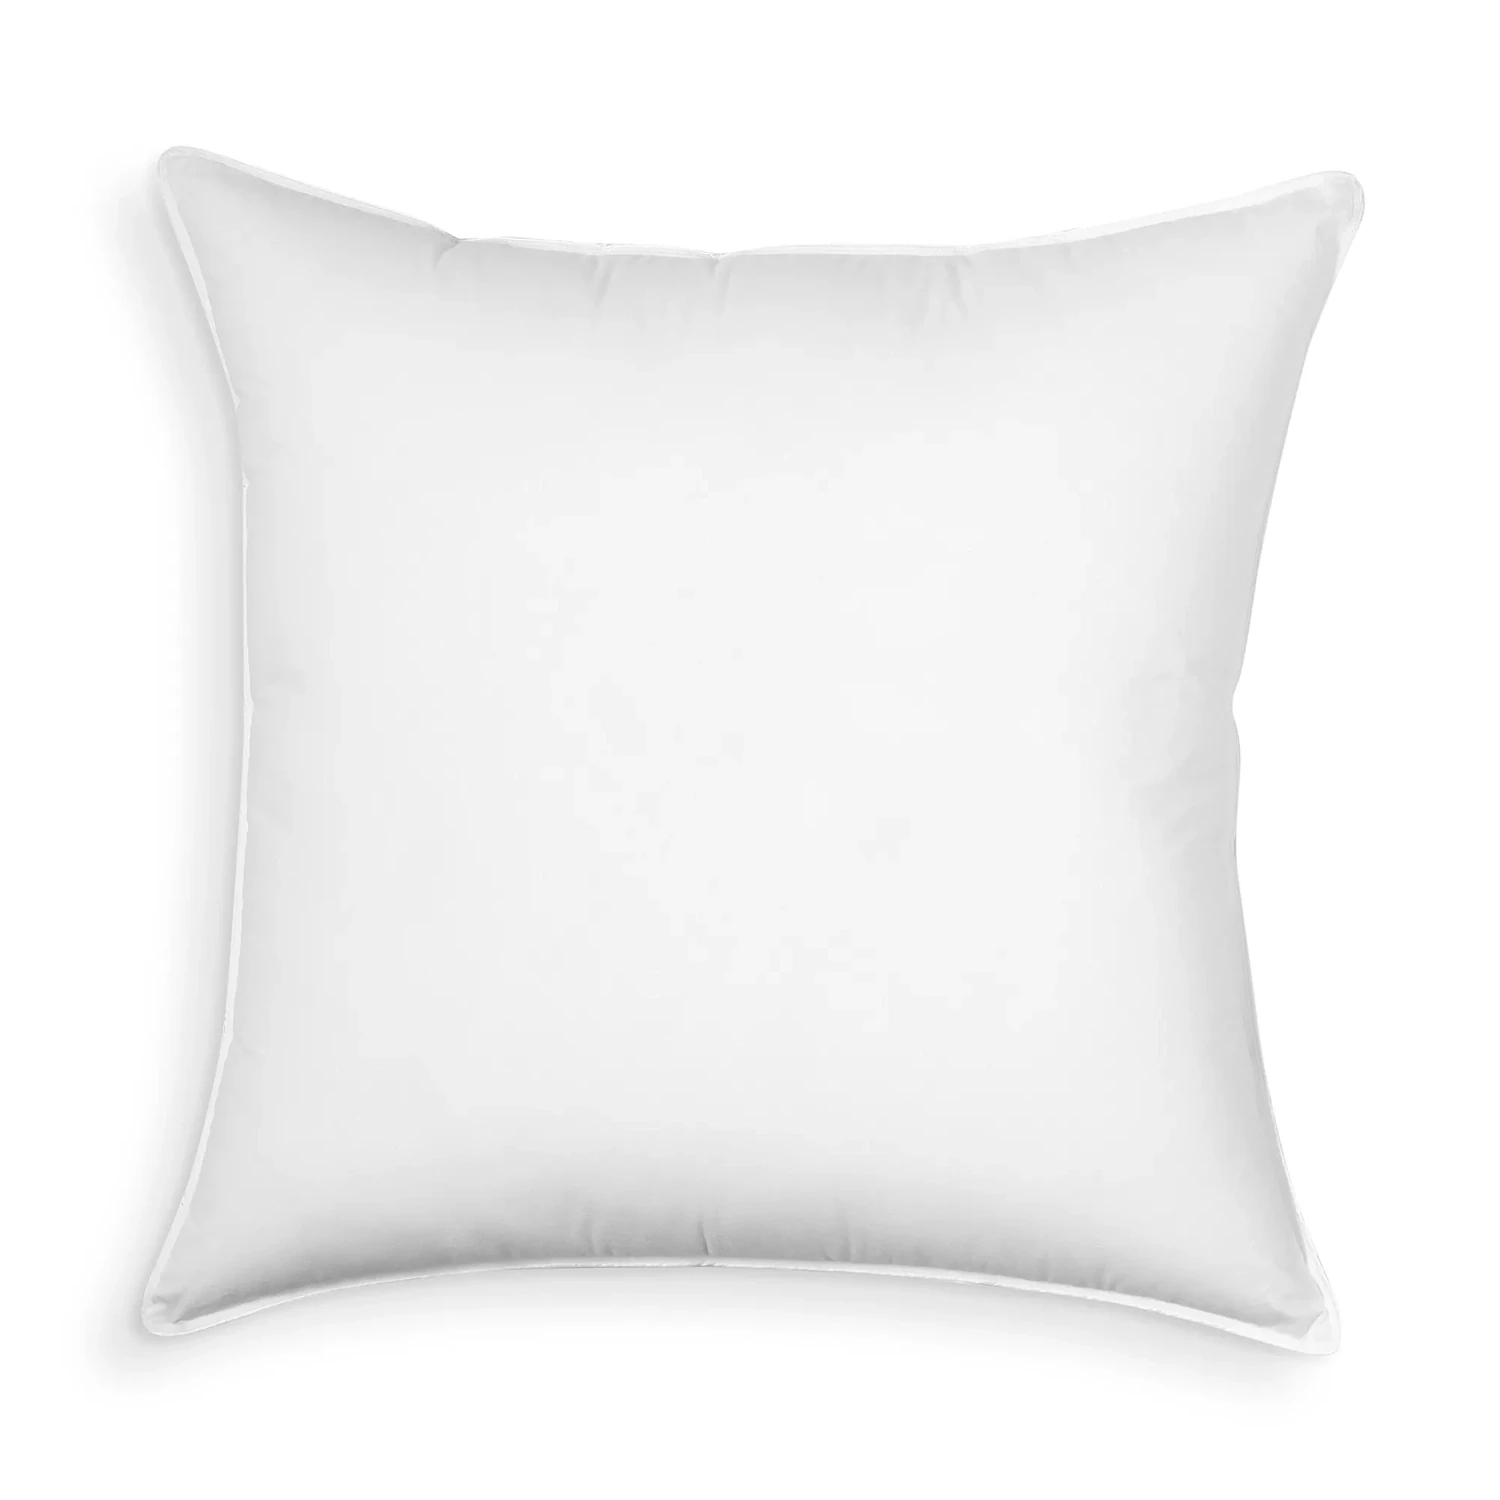 My Signature Pillow, Medium Density, Super Euro - 100% Exclusive